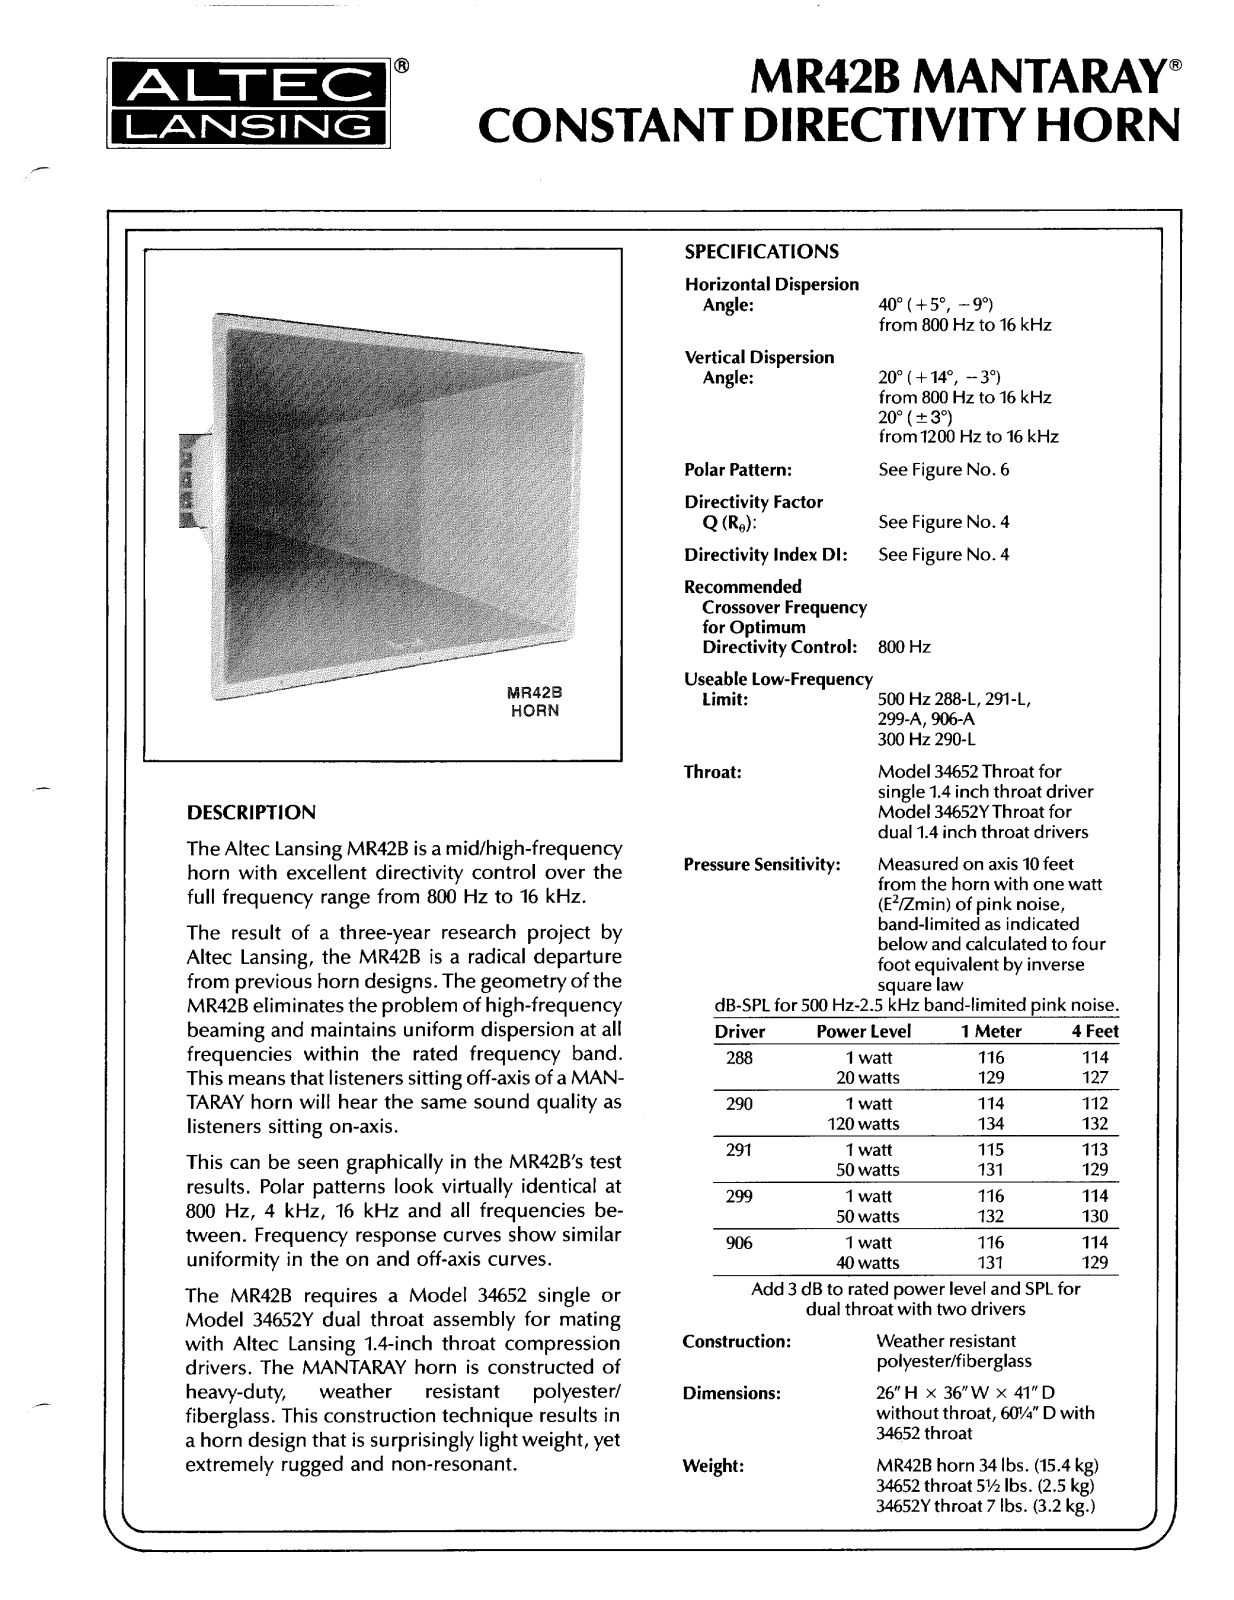 Altec lansing MR42B HF HORN User Manual